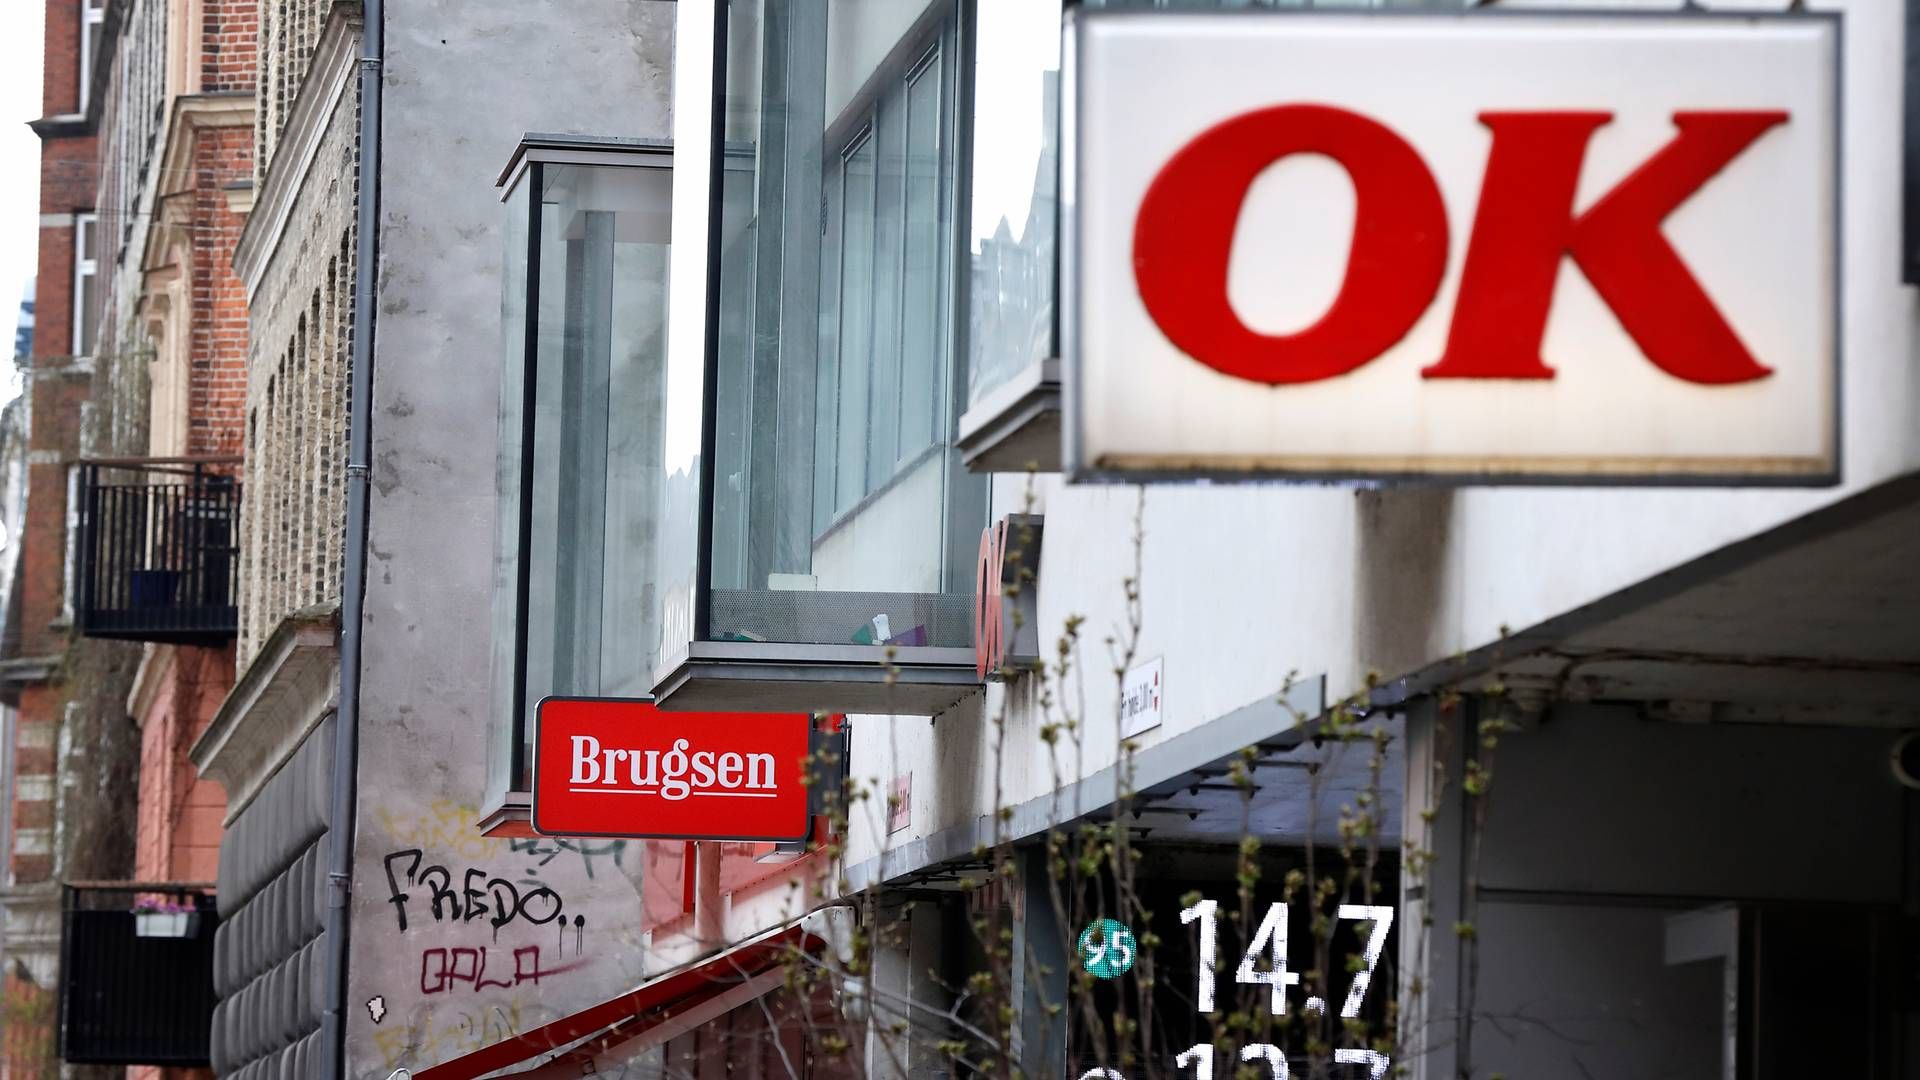 OK's opkøb af Coop har fået konsekvenser for flere højtstående medarbejdere, efter organisationen er blevet slanket. | Foto: Jens Dresling